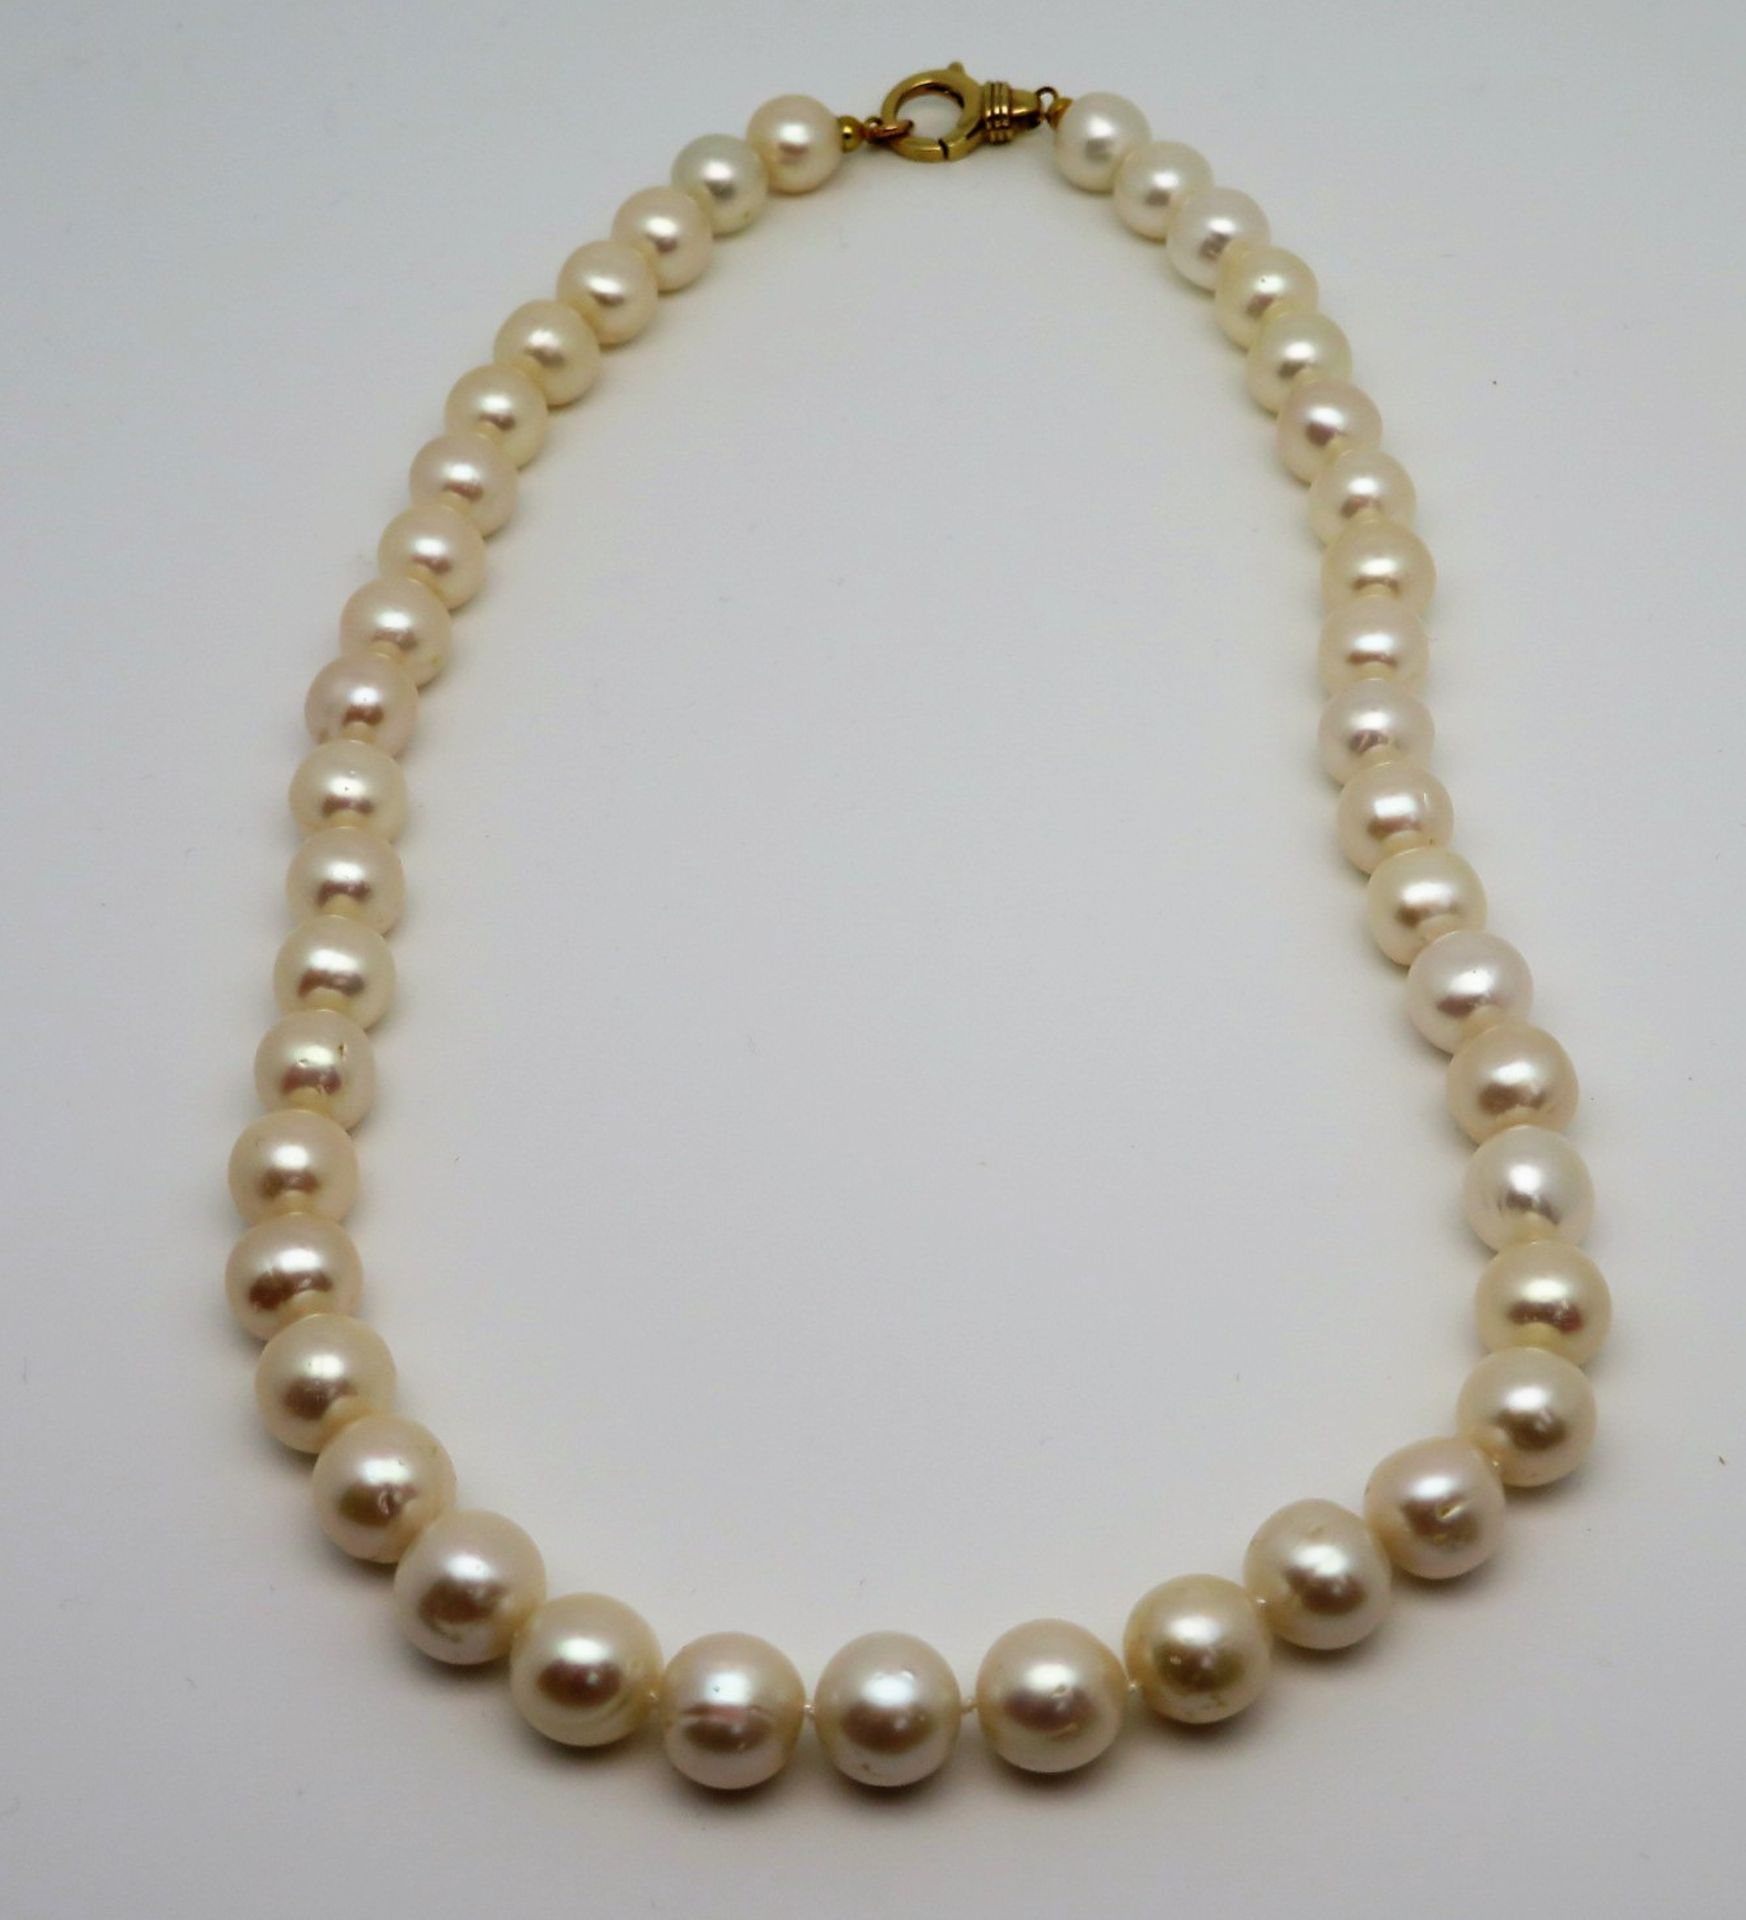 Perlenkette, einreihig, 14 karätige Gelbgold-Schließe, gepunzt, einzeln geknotet, l 52 cm, ca. d 1 